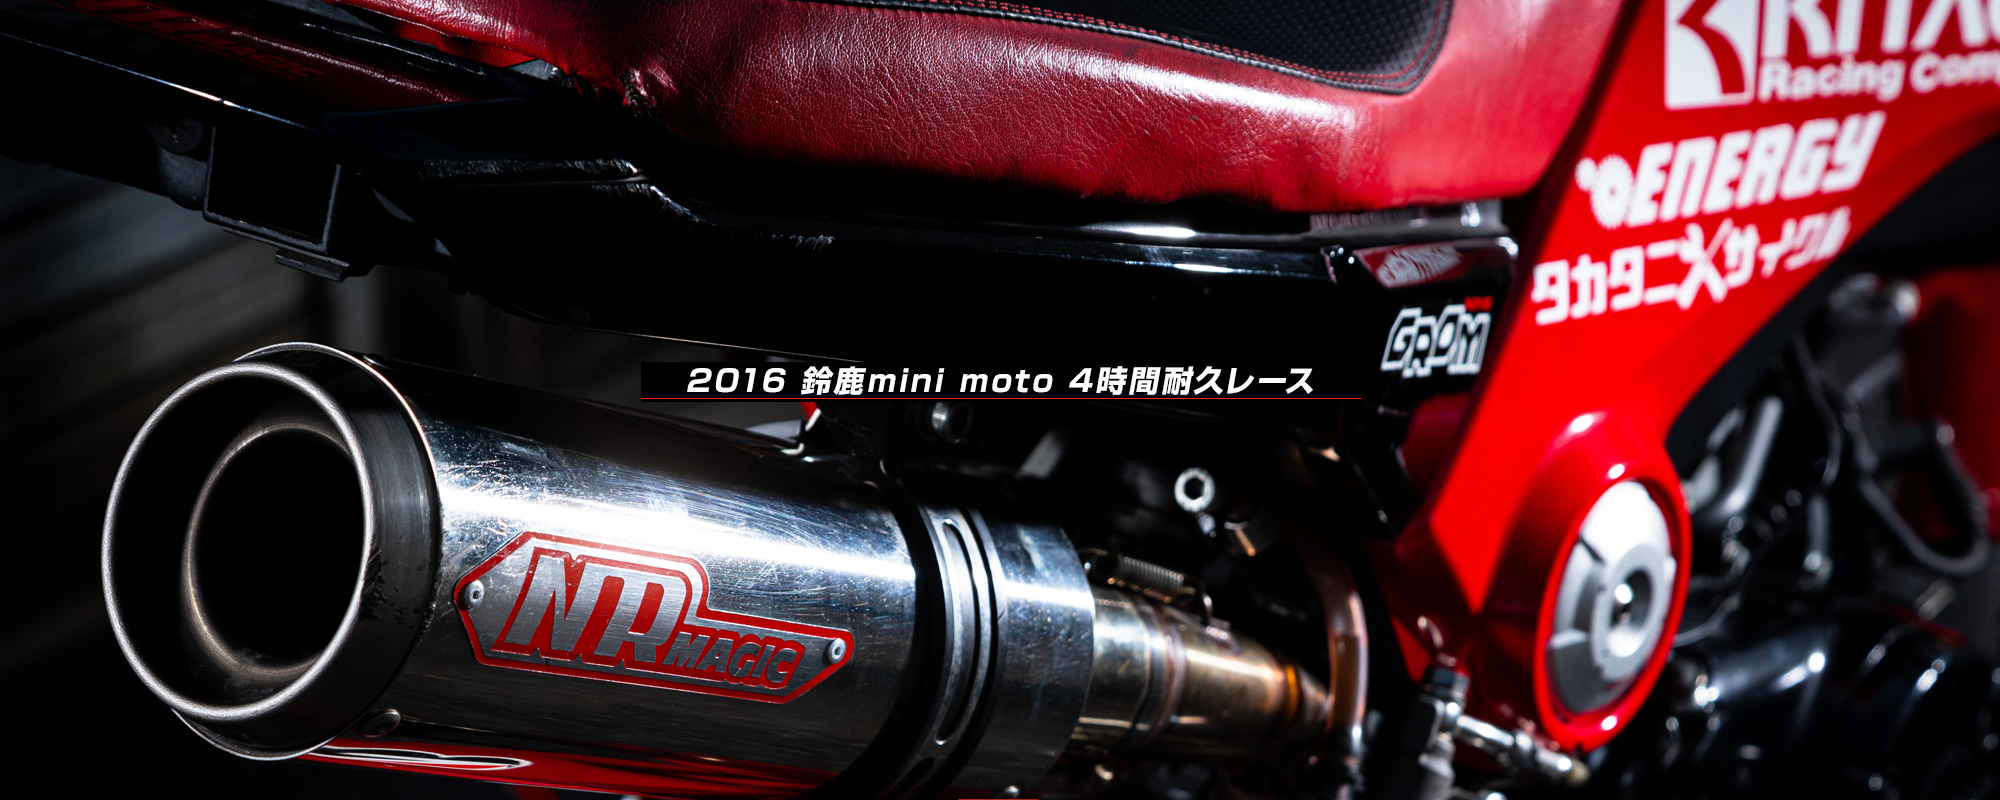 2016 鈴鹿mini moto 4時間耐久レース